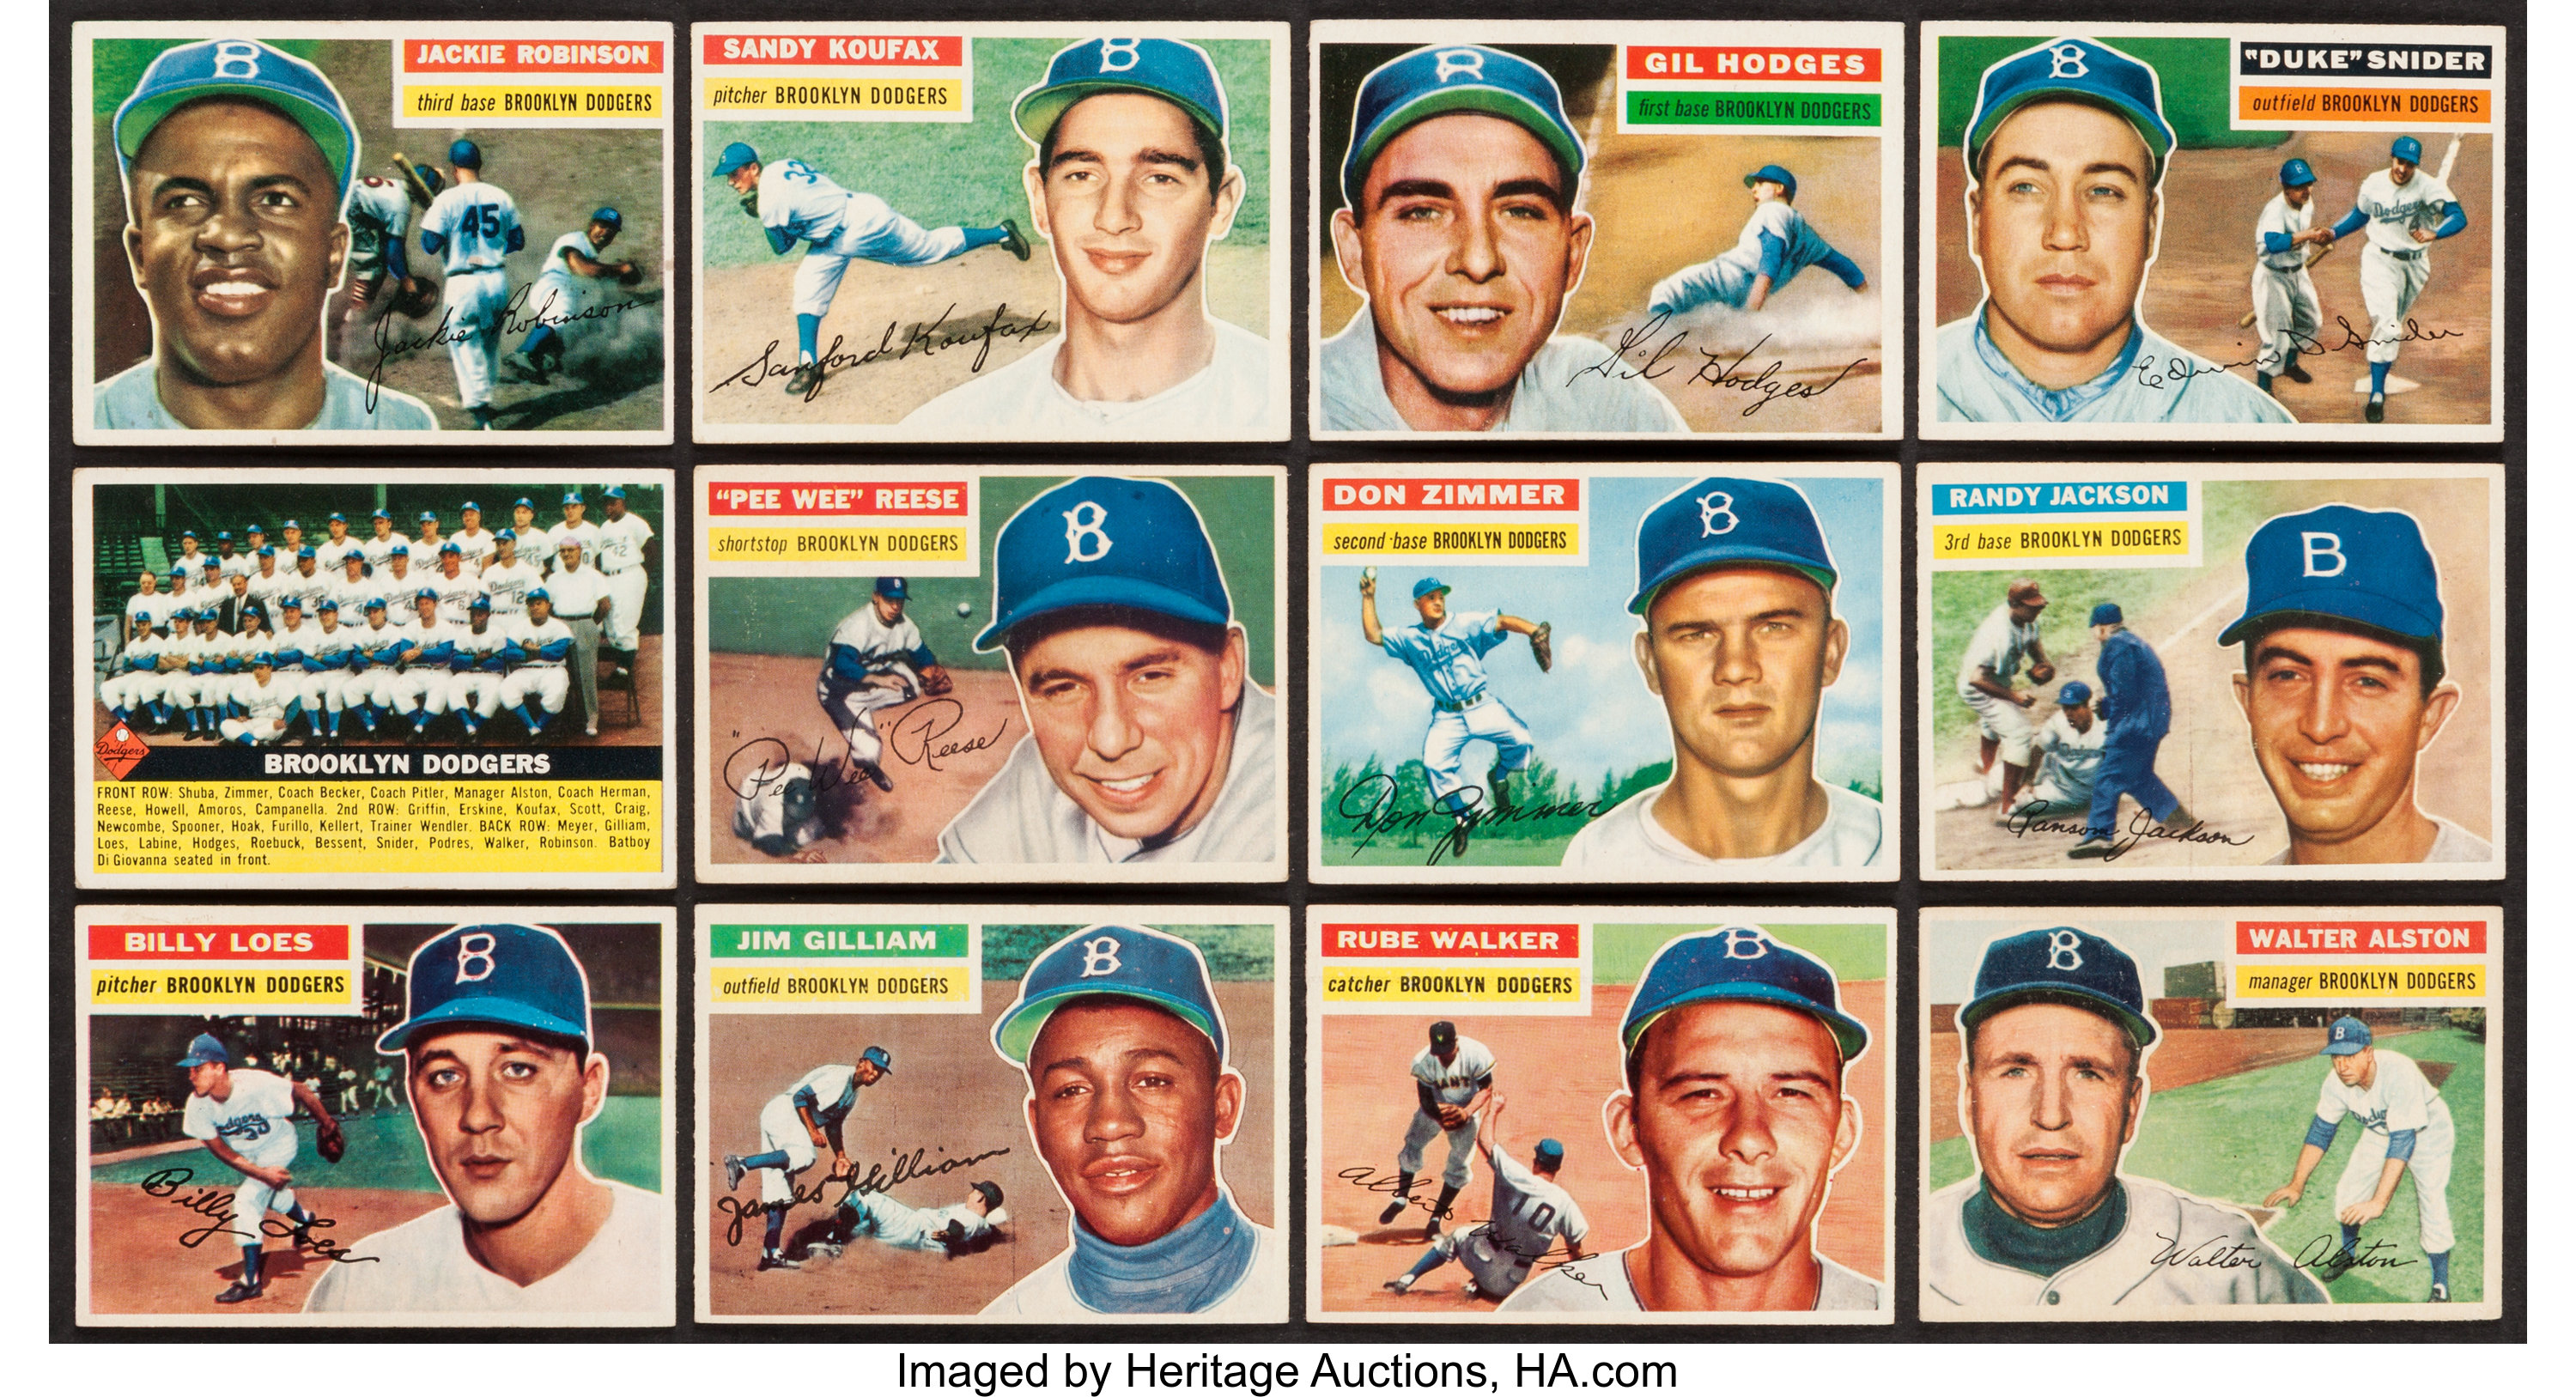 1956, Pee Wee Reese, Topps Baseball Card (Brooklyn Dodgers) Vintage